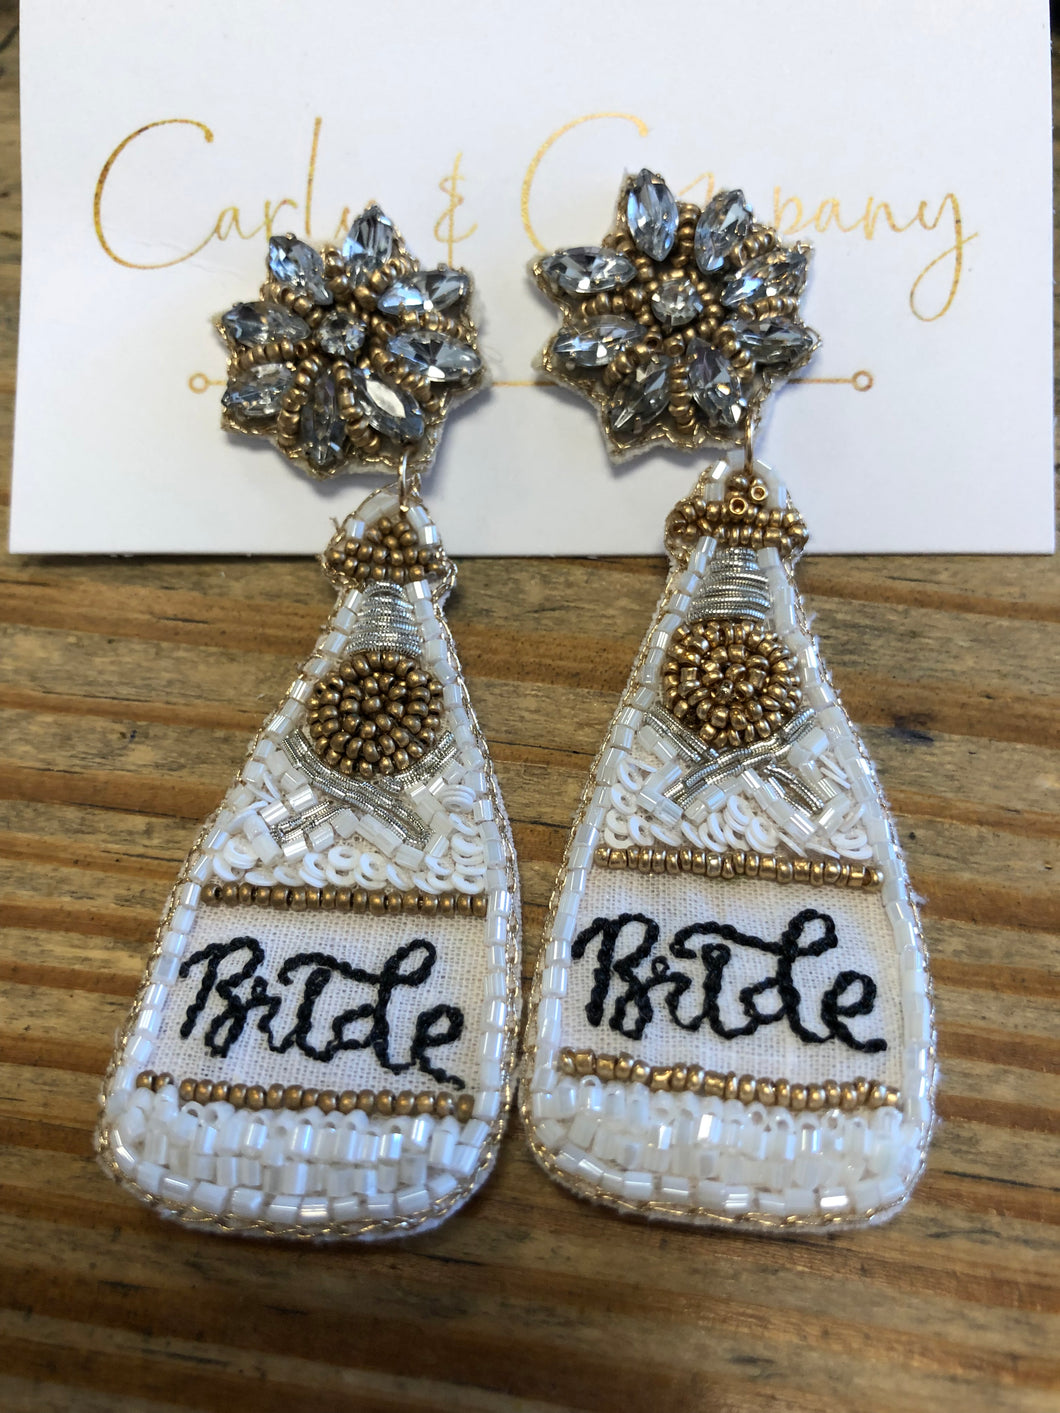 Bride Beaded Earrings